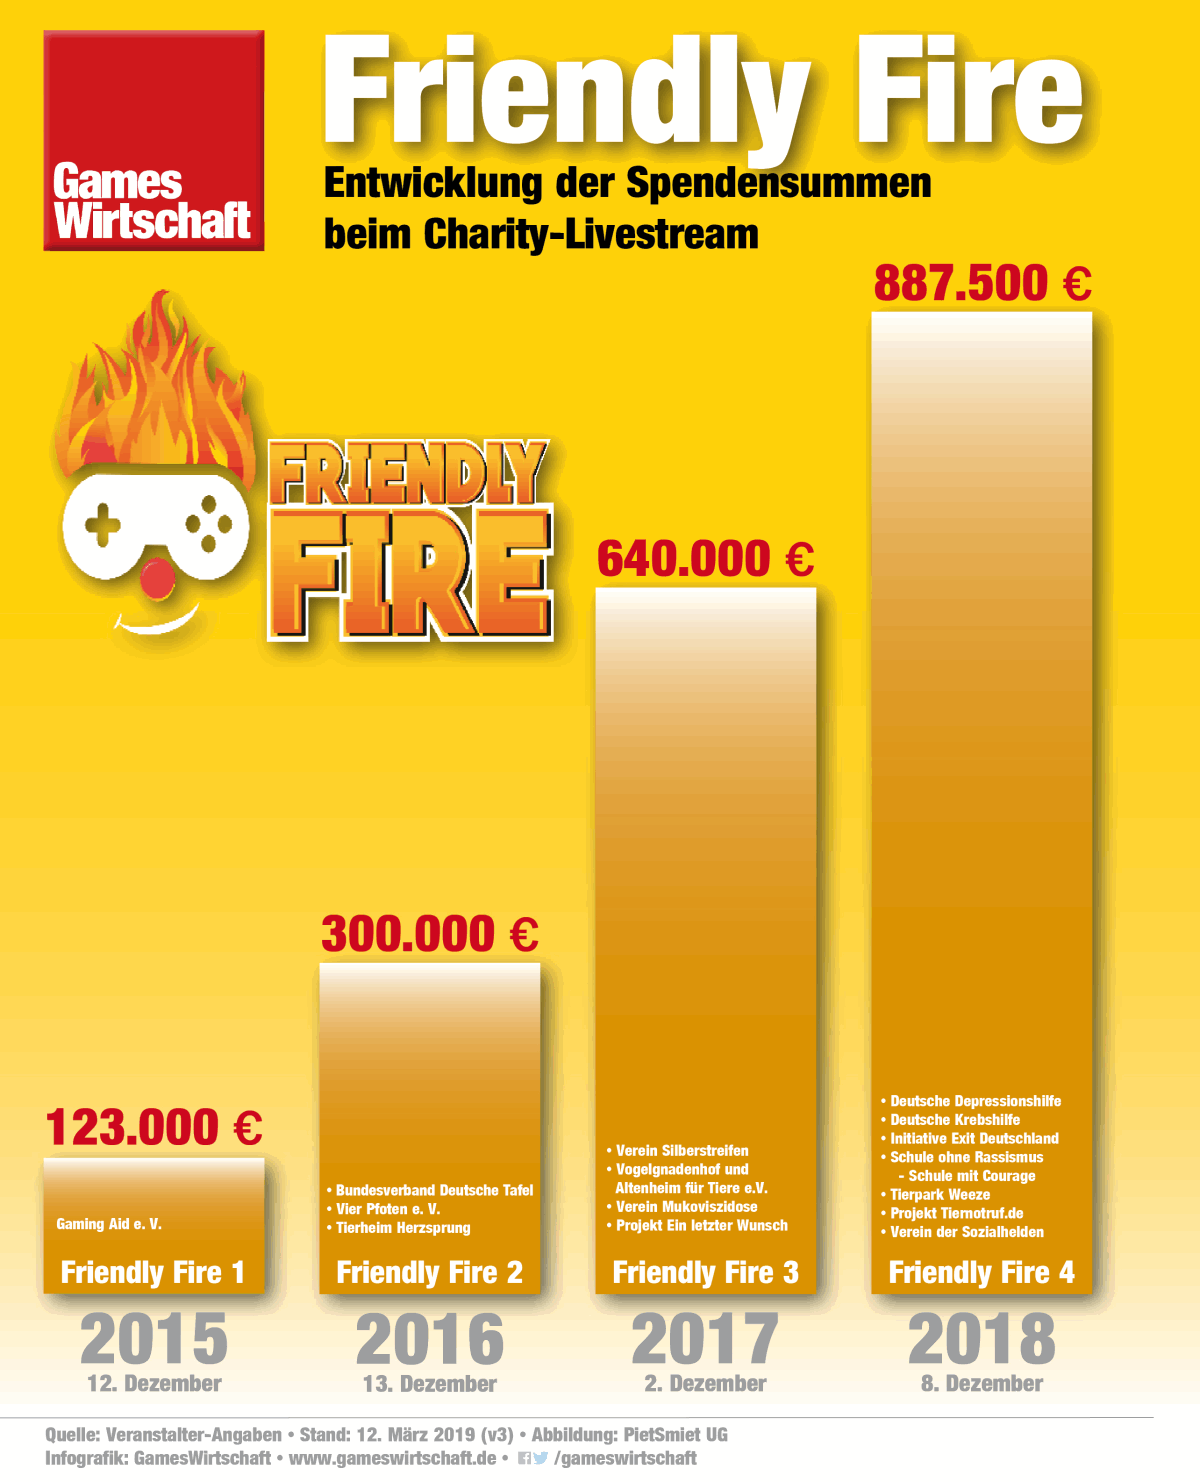 Mit einem Erlös von rund 887.500 Euro hat Friendly Fire 4 einen neuen Spenden-Rekord aufgestellt (Stand: 12.3.2019)